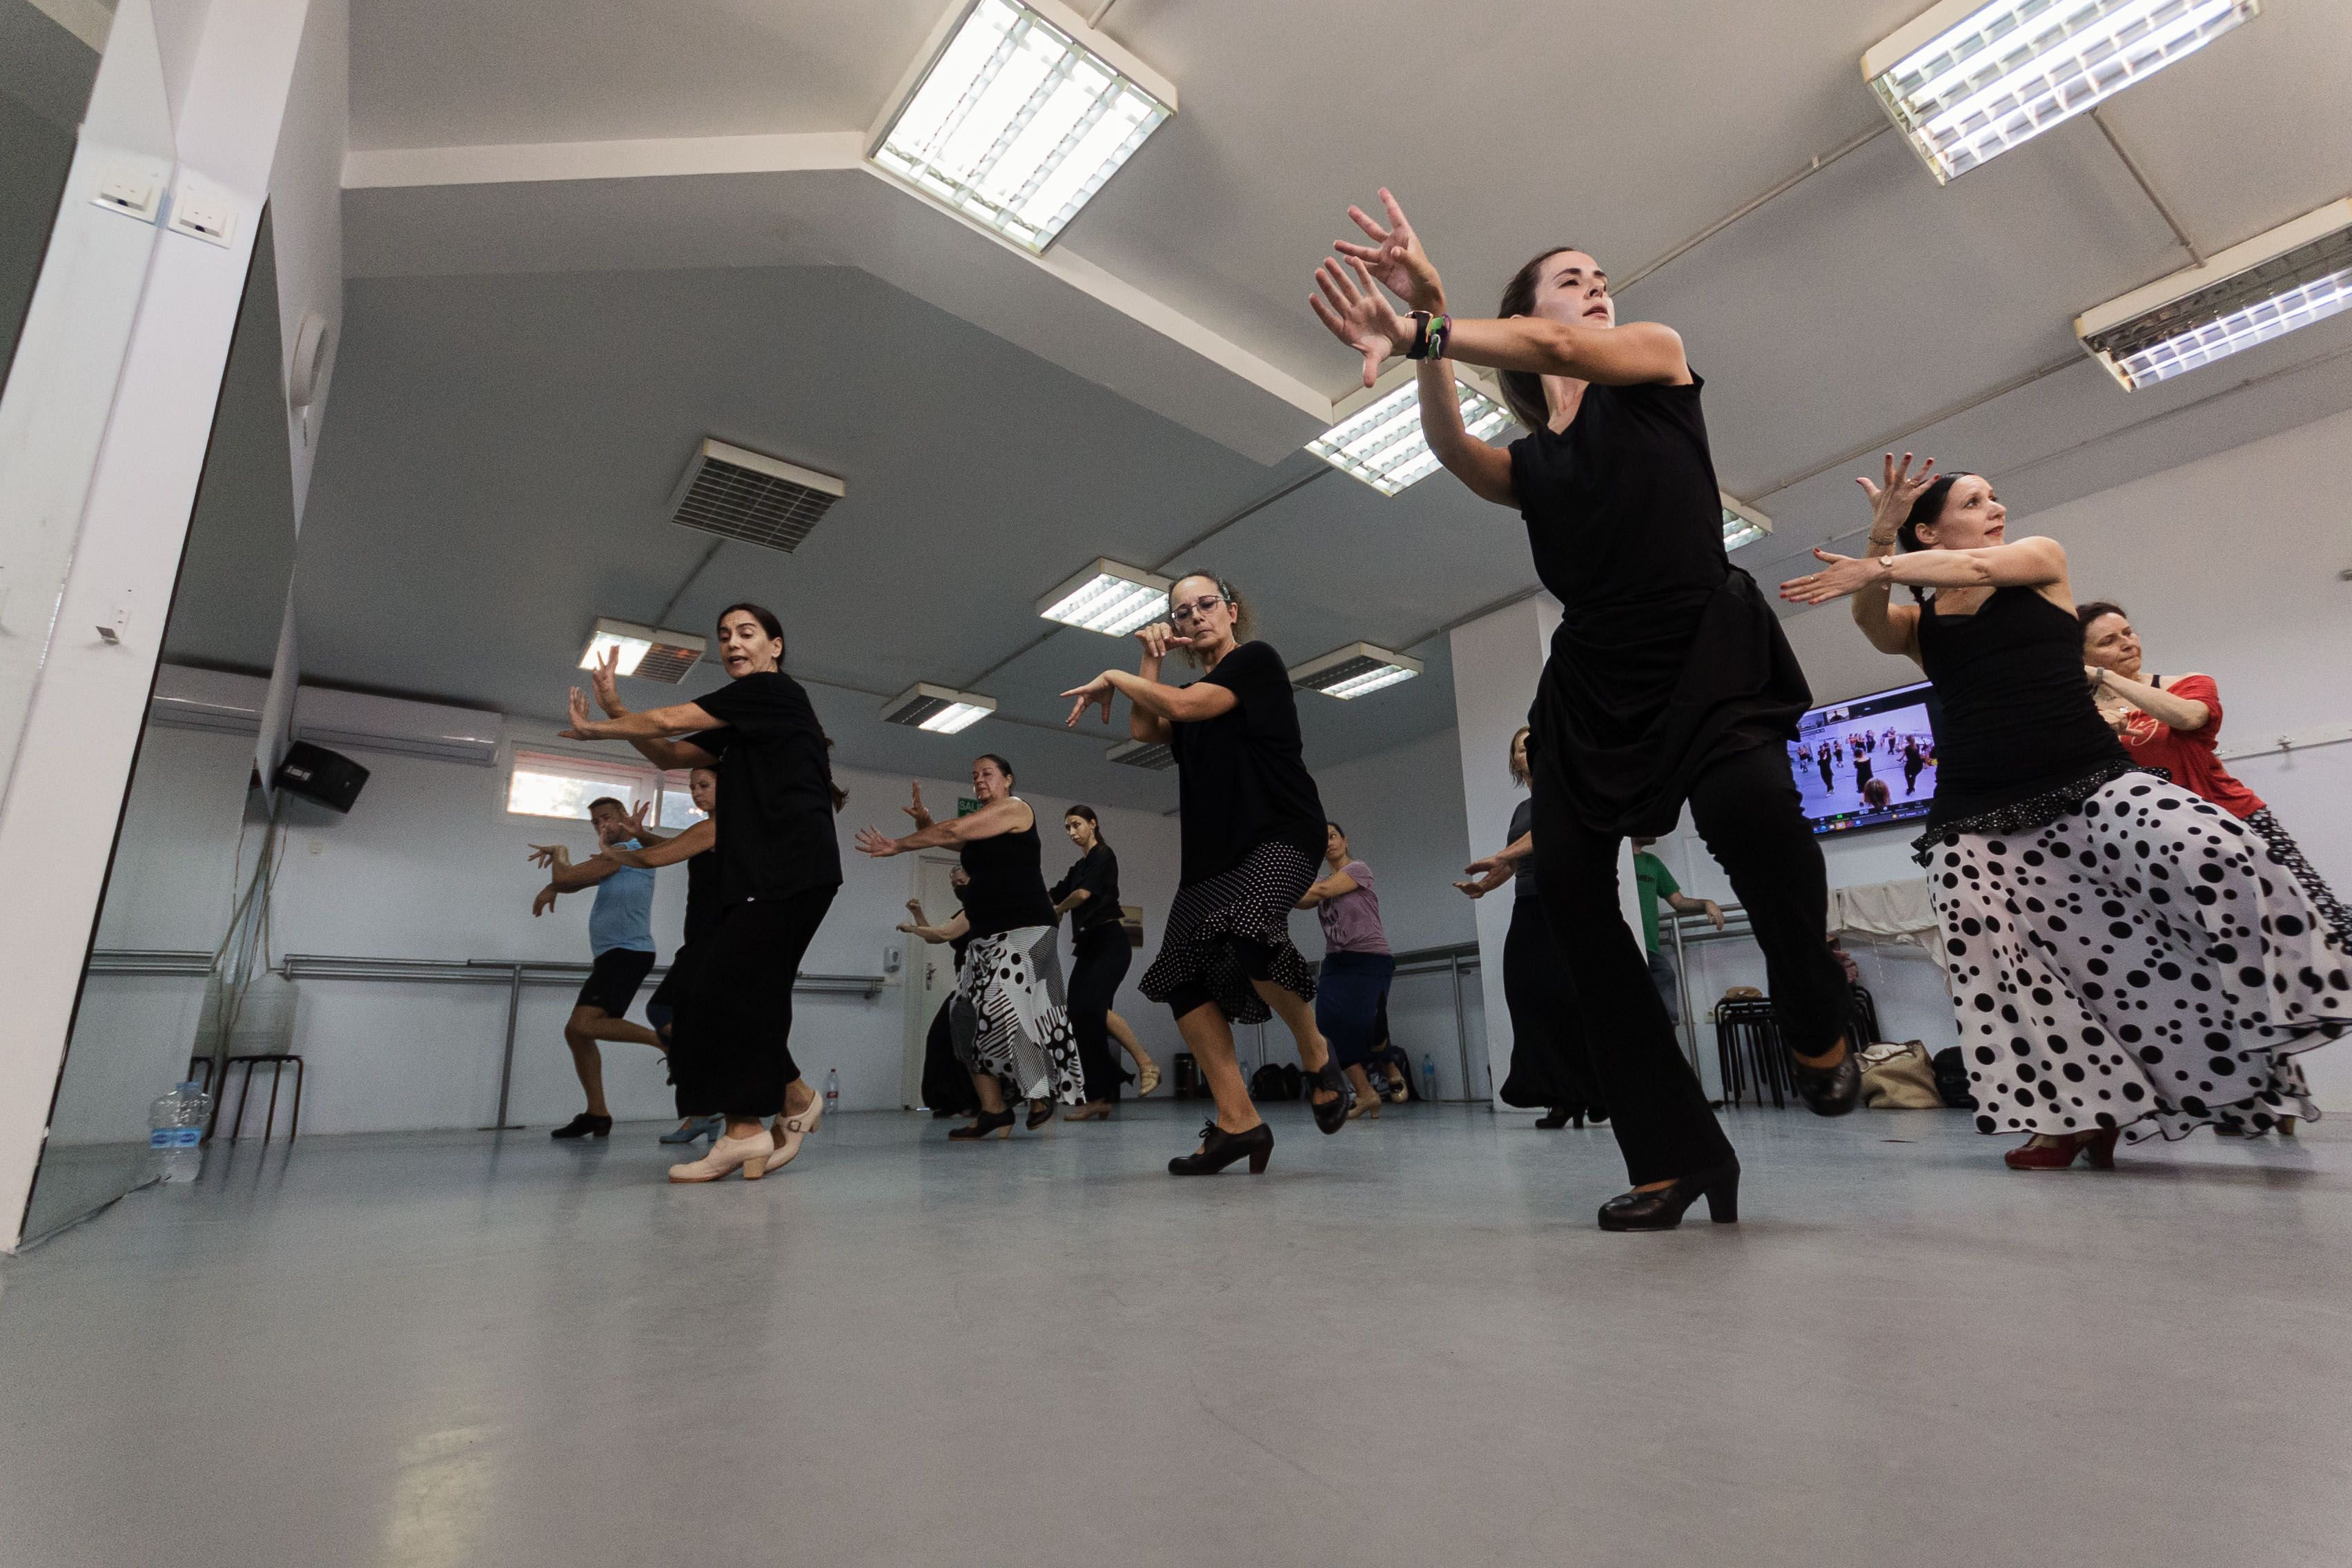 El Centro de Baile de Jerez ofrece cursos intensivos de flamenco en verano impartidos por artistas de primera fila.